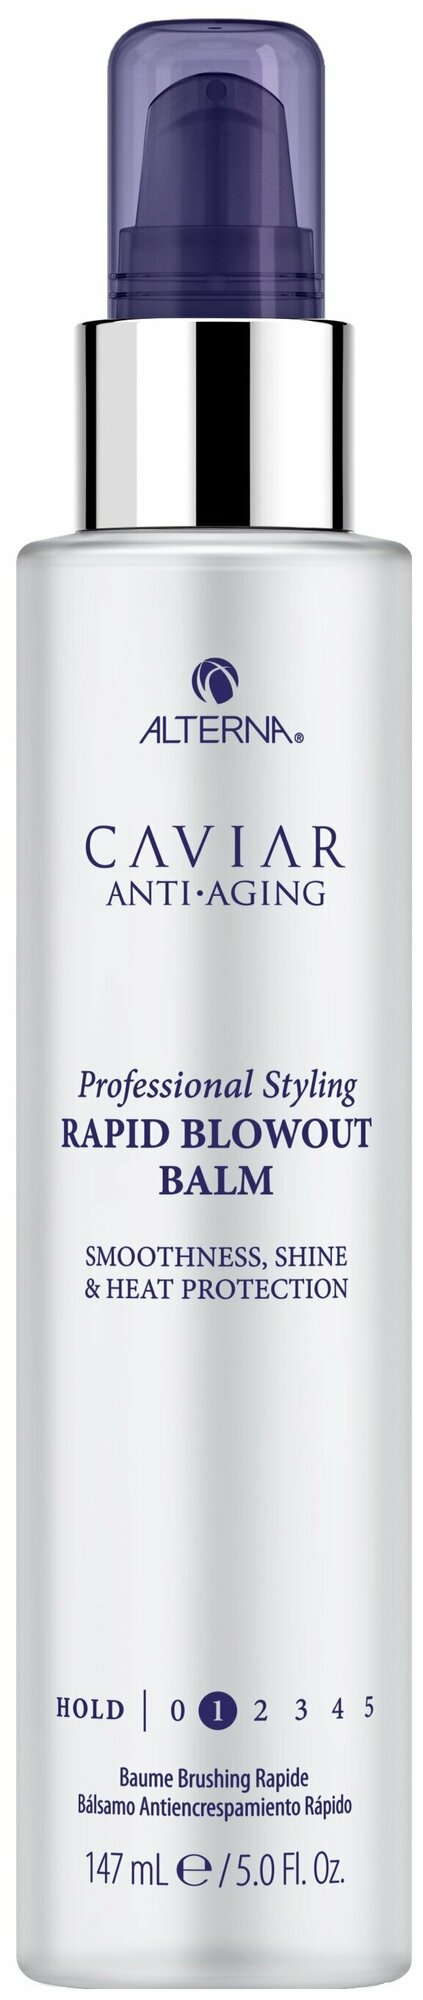 Alterna Caviar Anti-Aging Professional Styling Rapid Blowout Balm - Бальзам для быстрого разглаживания волоc с антивозрастным уходом 147 мл